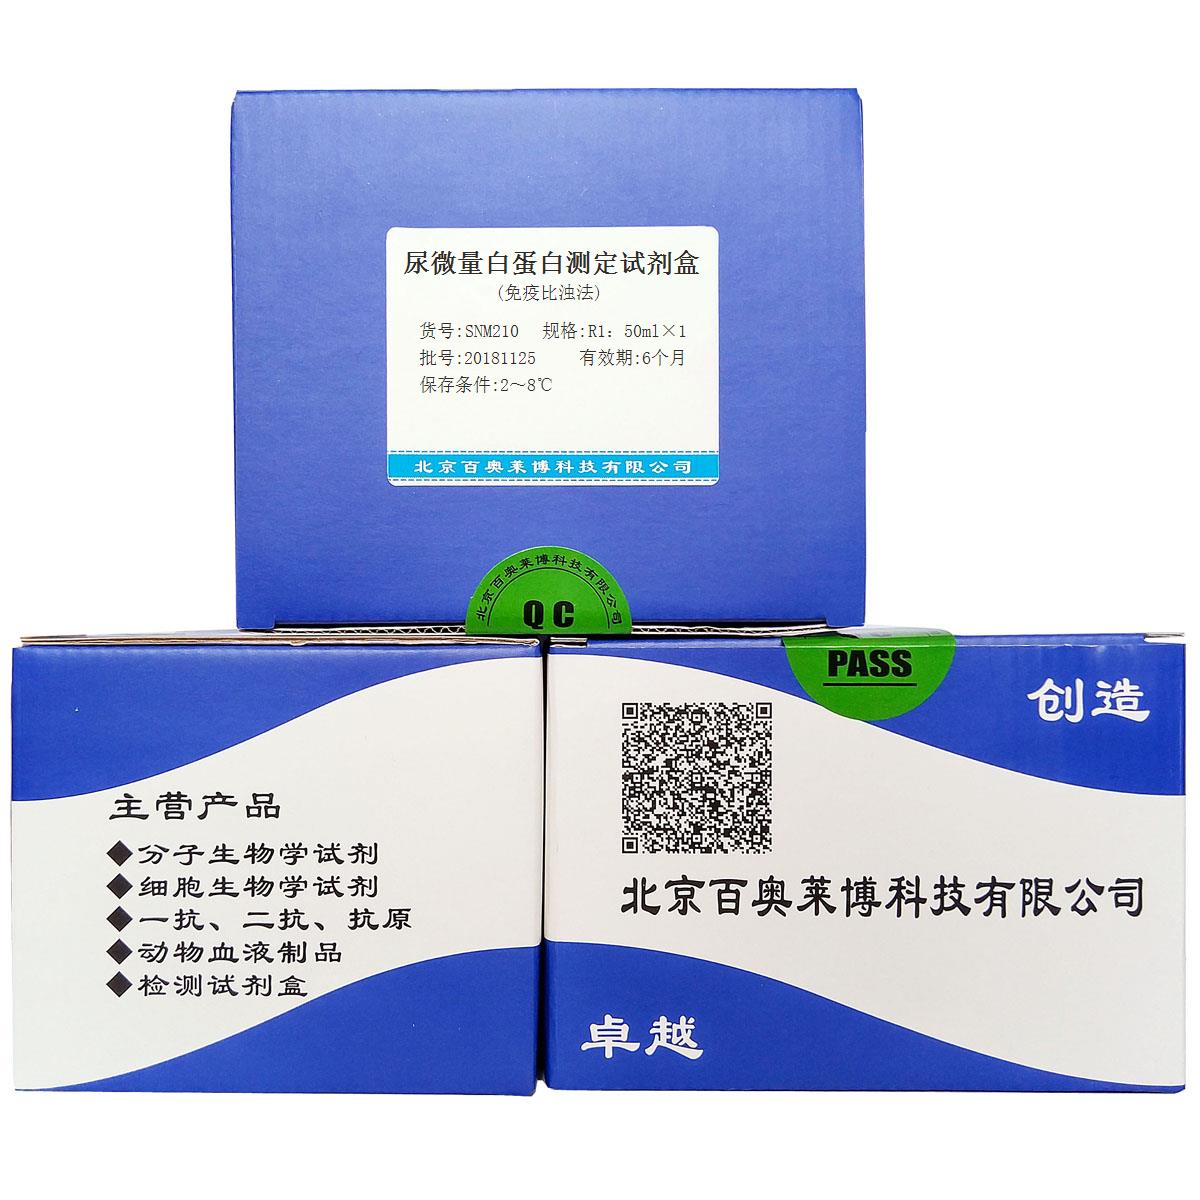 尿微量白蛋白测定试剂盒(免疫比浊法)